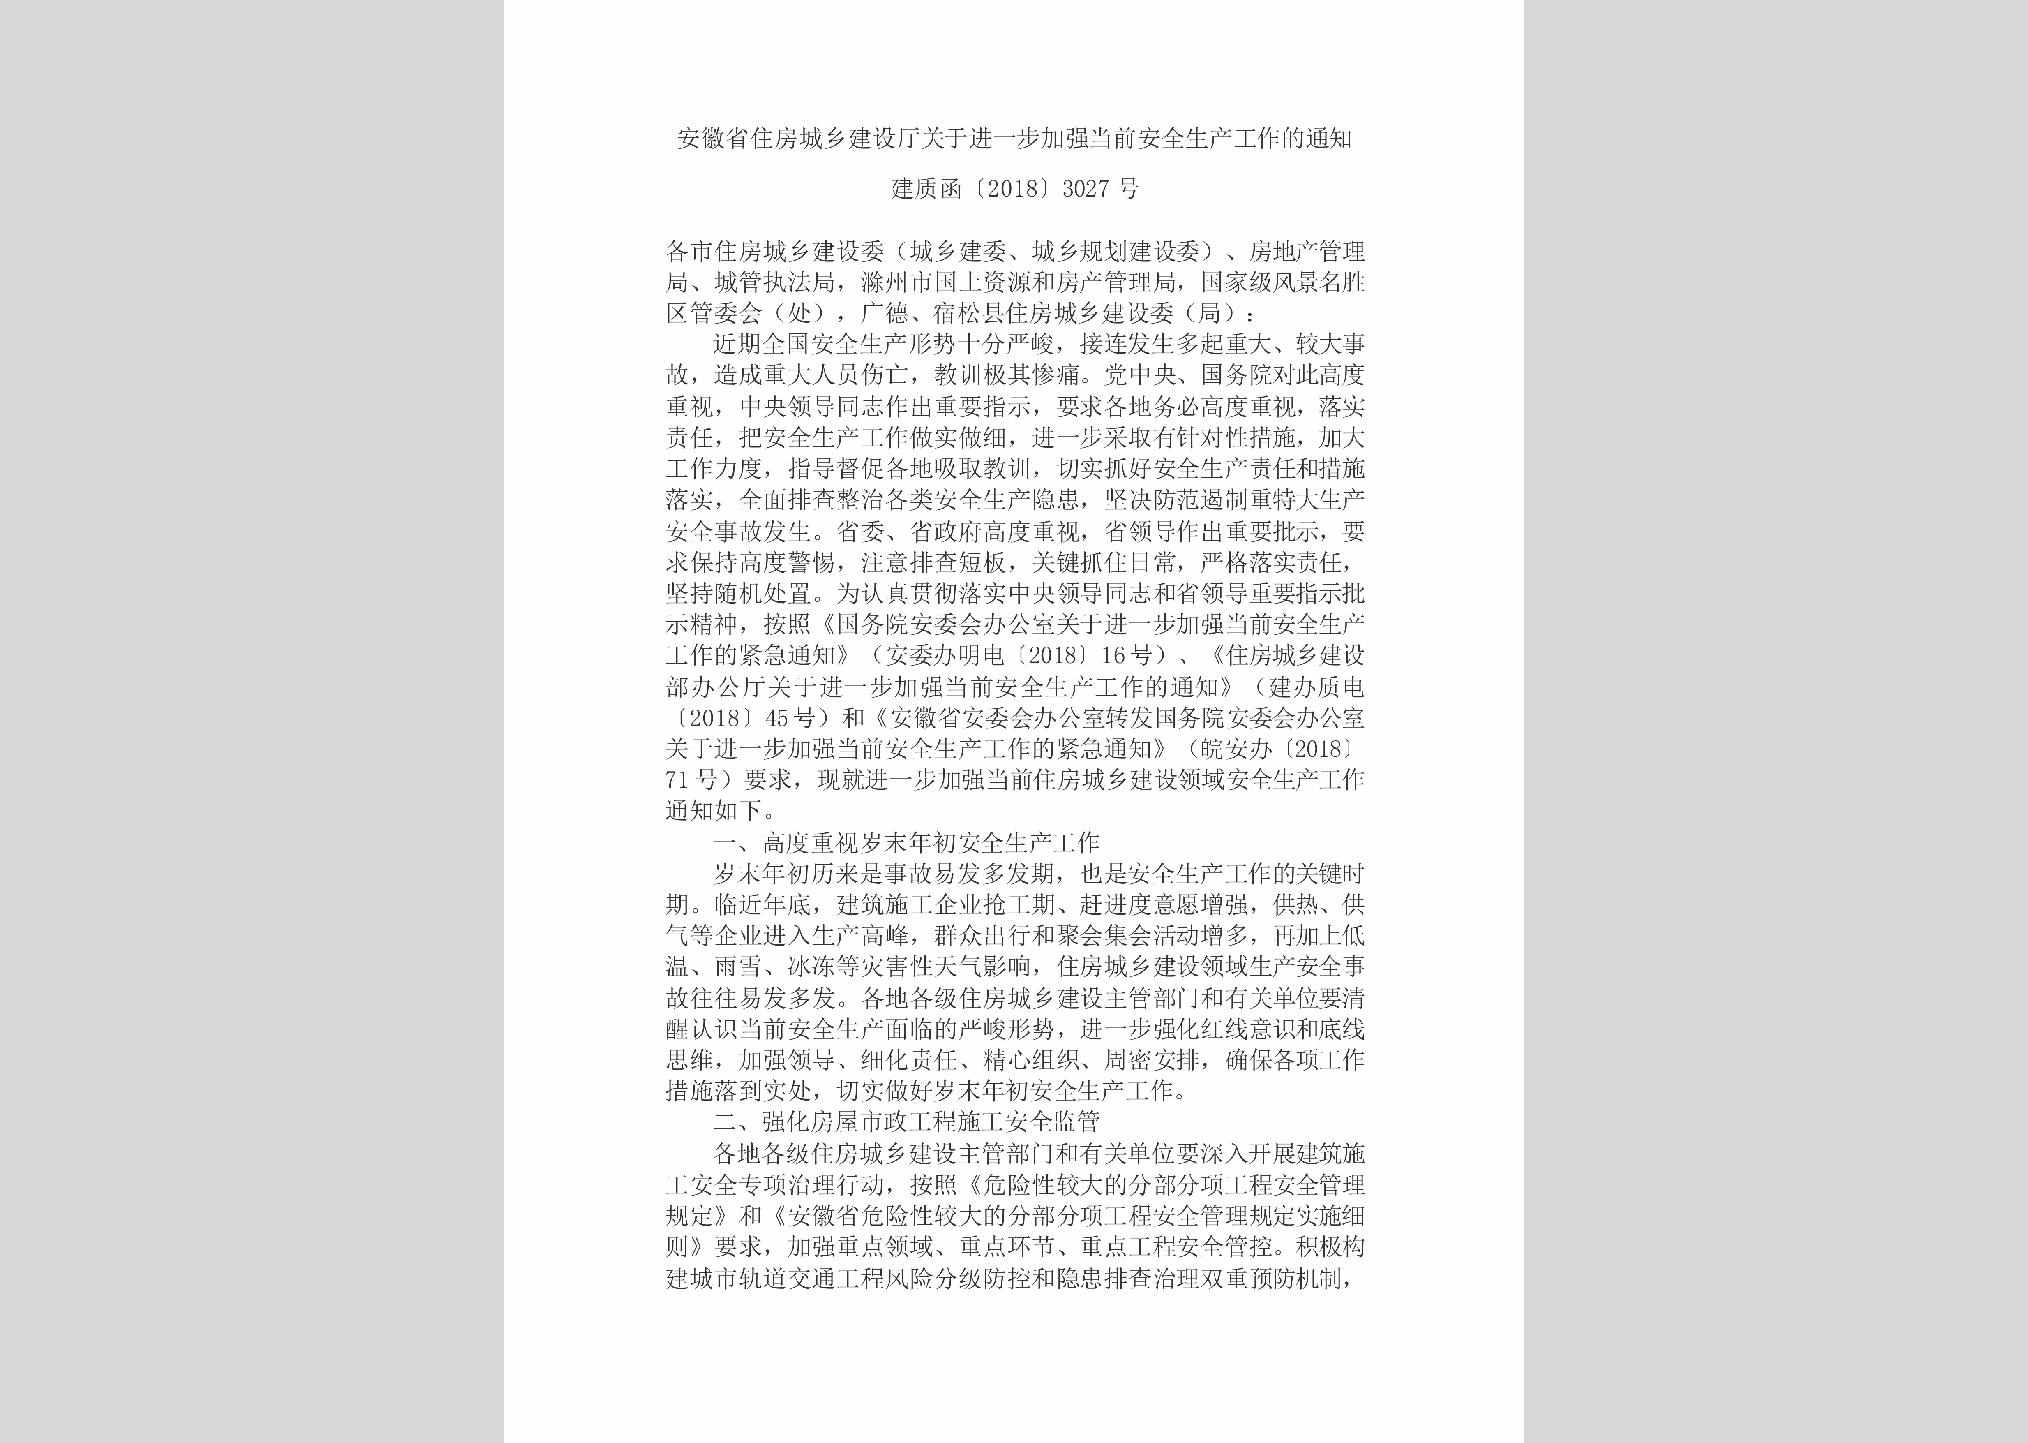 建质函[2018]3027号：安徽省住房城乡建设厅关于进一步加强当前安全生产工作的通知